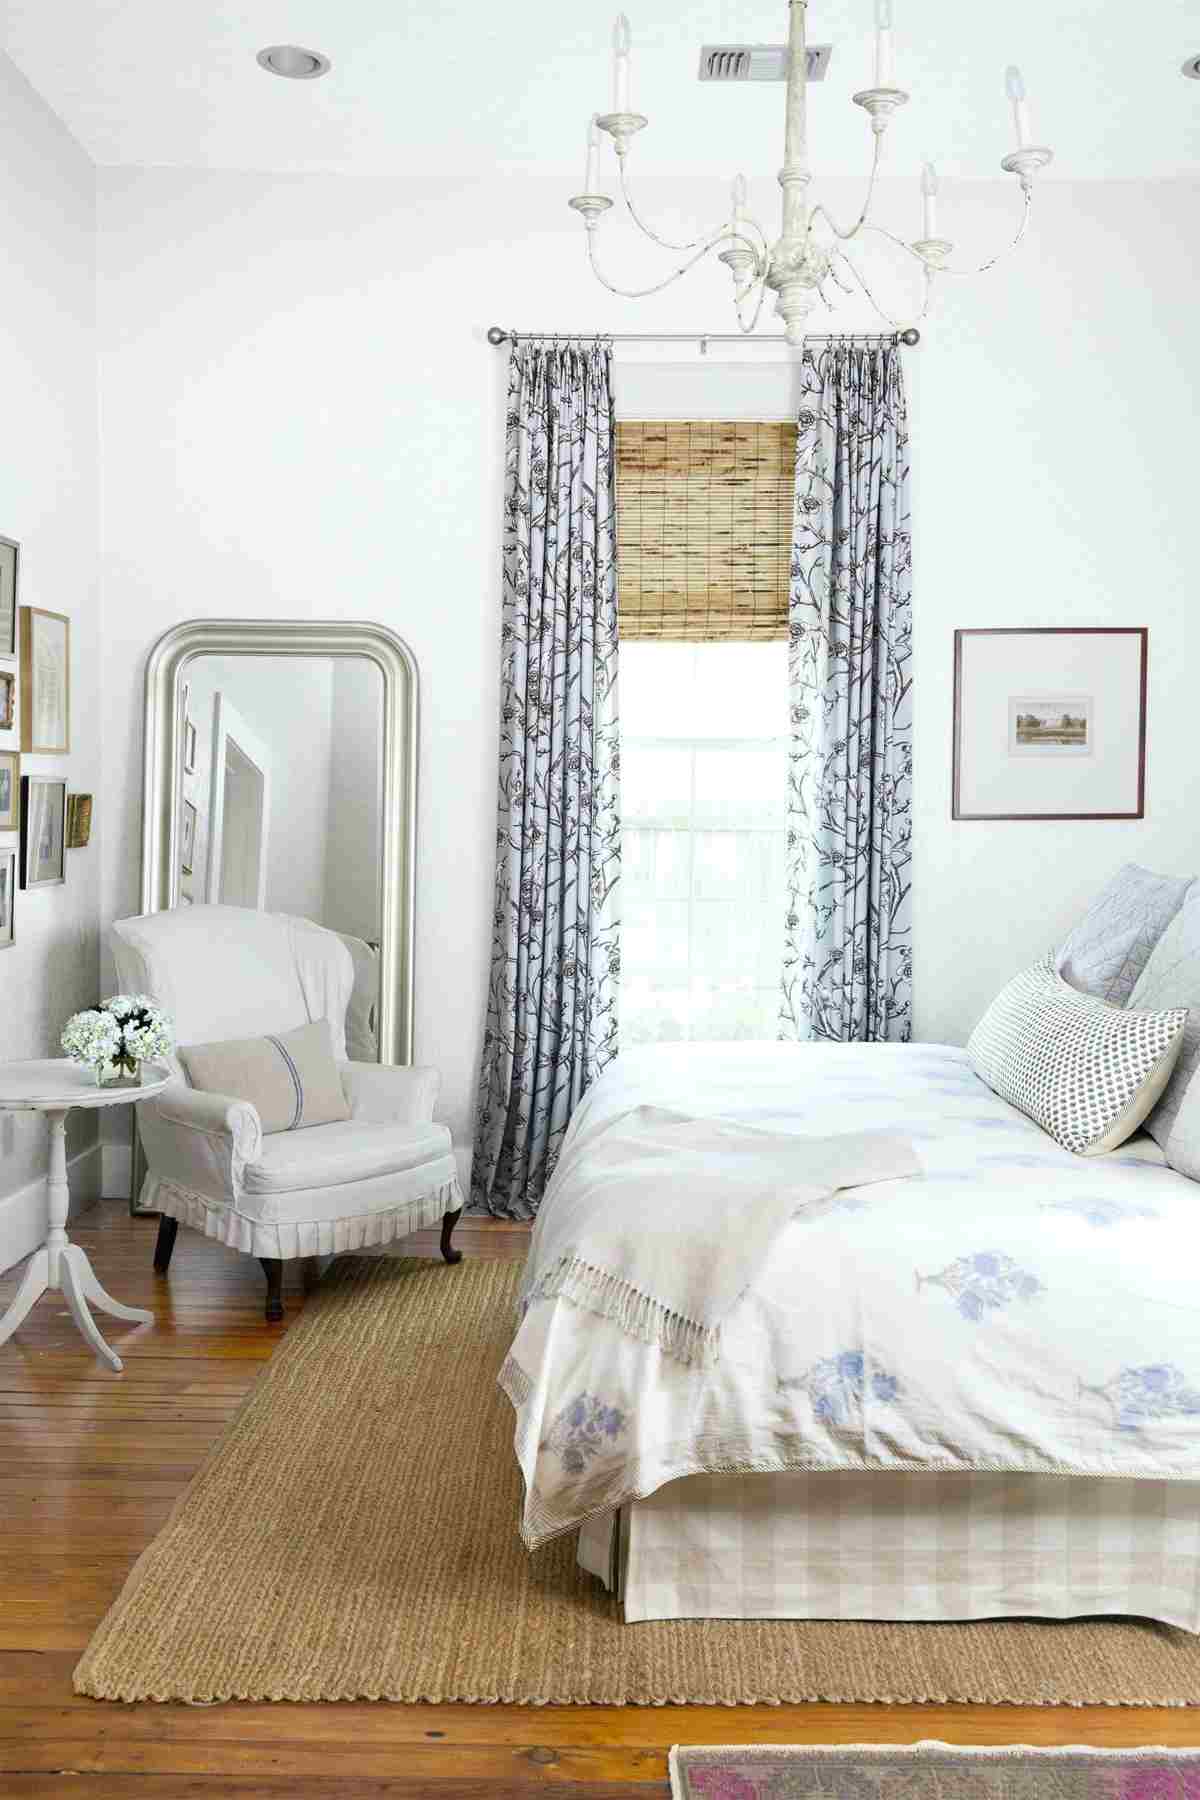 Romantisches Zimmer im Landhausstil mit Sessel und Spiegel, Beistelltisch und Vorhängen als Deko